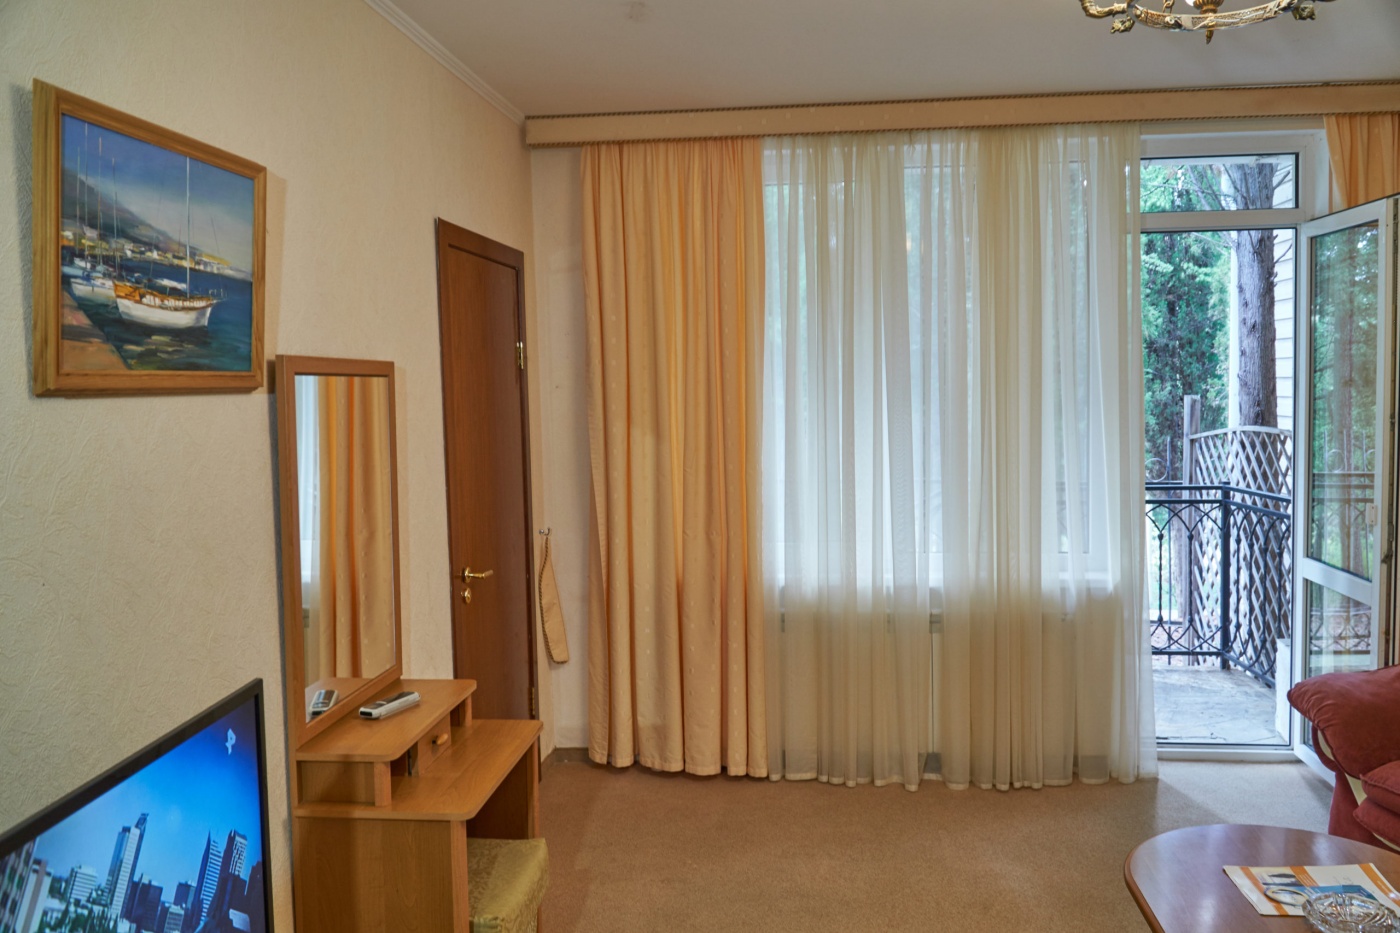  Отель «Сказка» Республика Крым Апартаменты класса Люкс 2-комнатный, фото 4